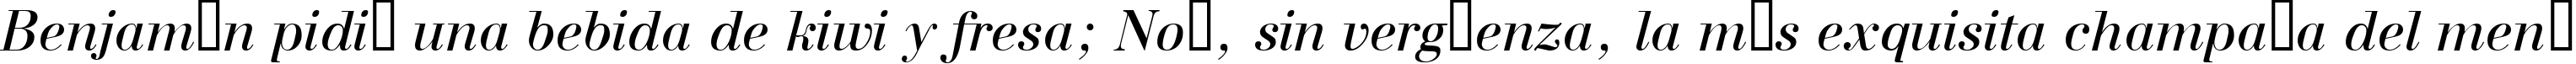 Пример написания шрифтом a_BodoniNova Italic текста на испанском